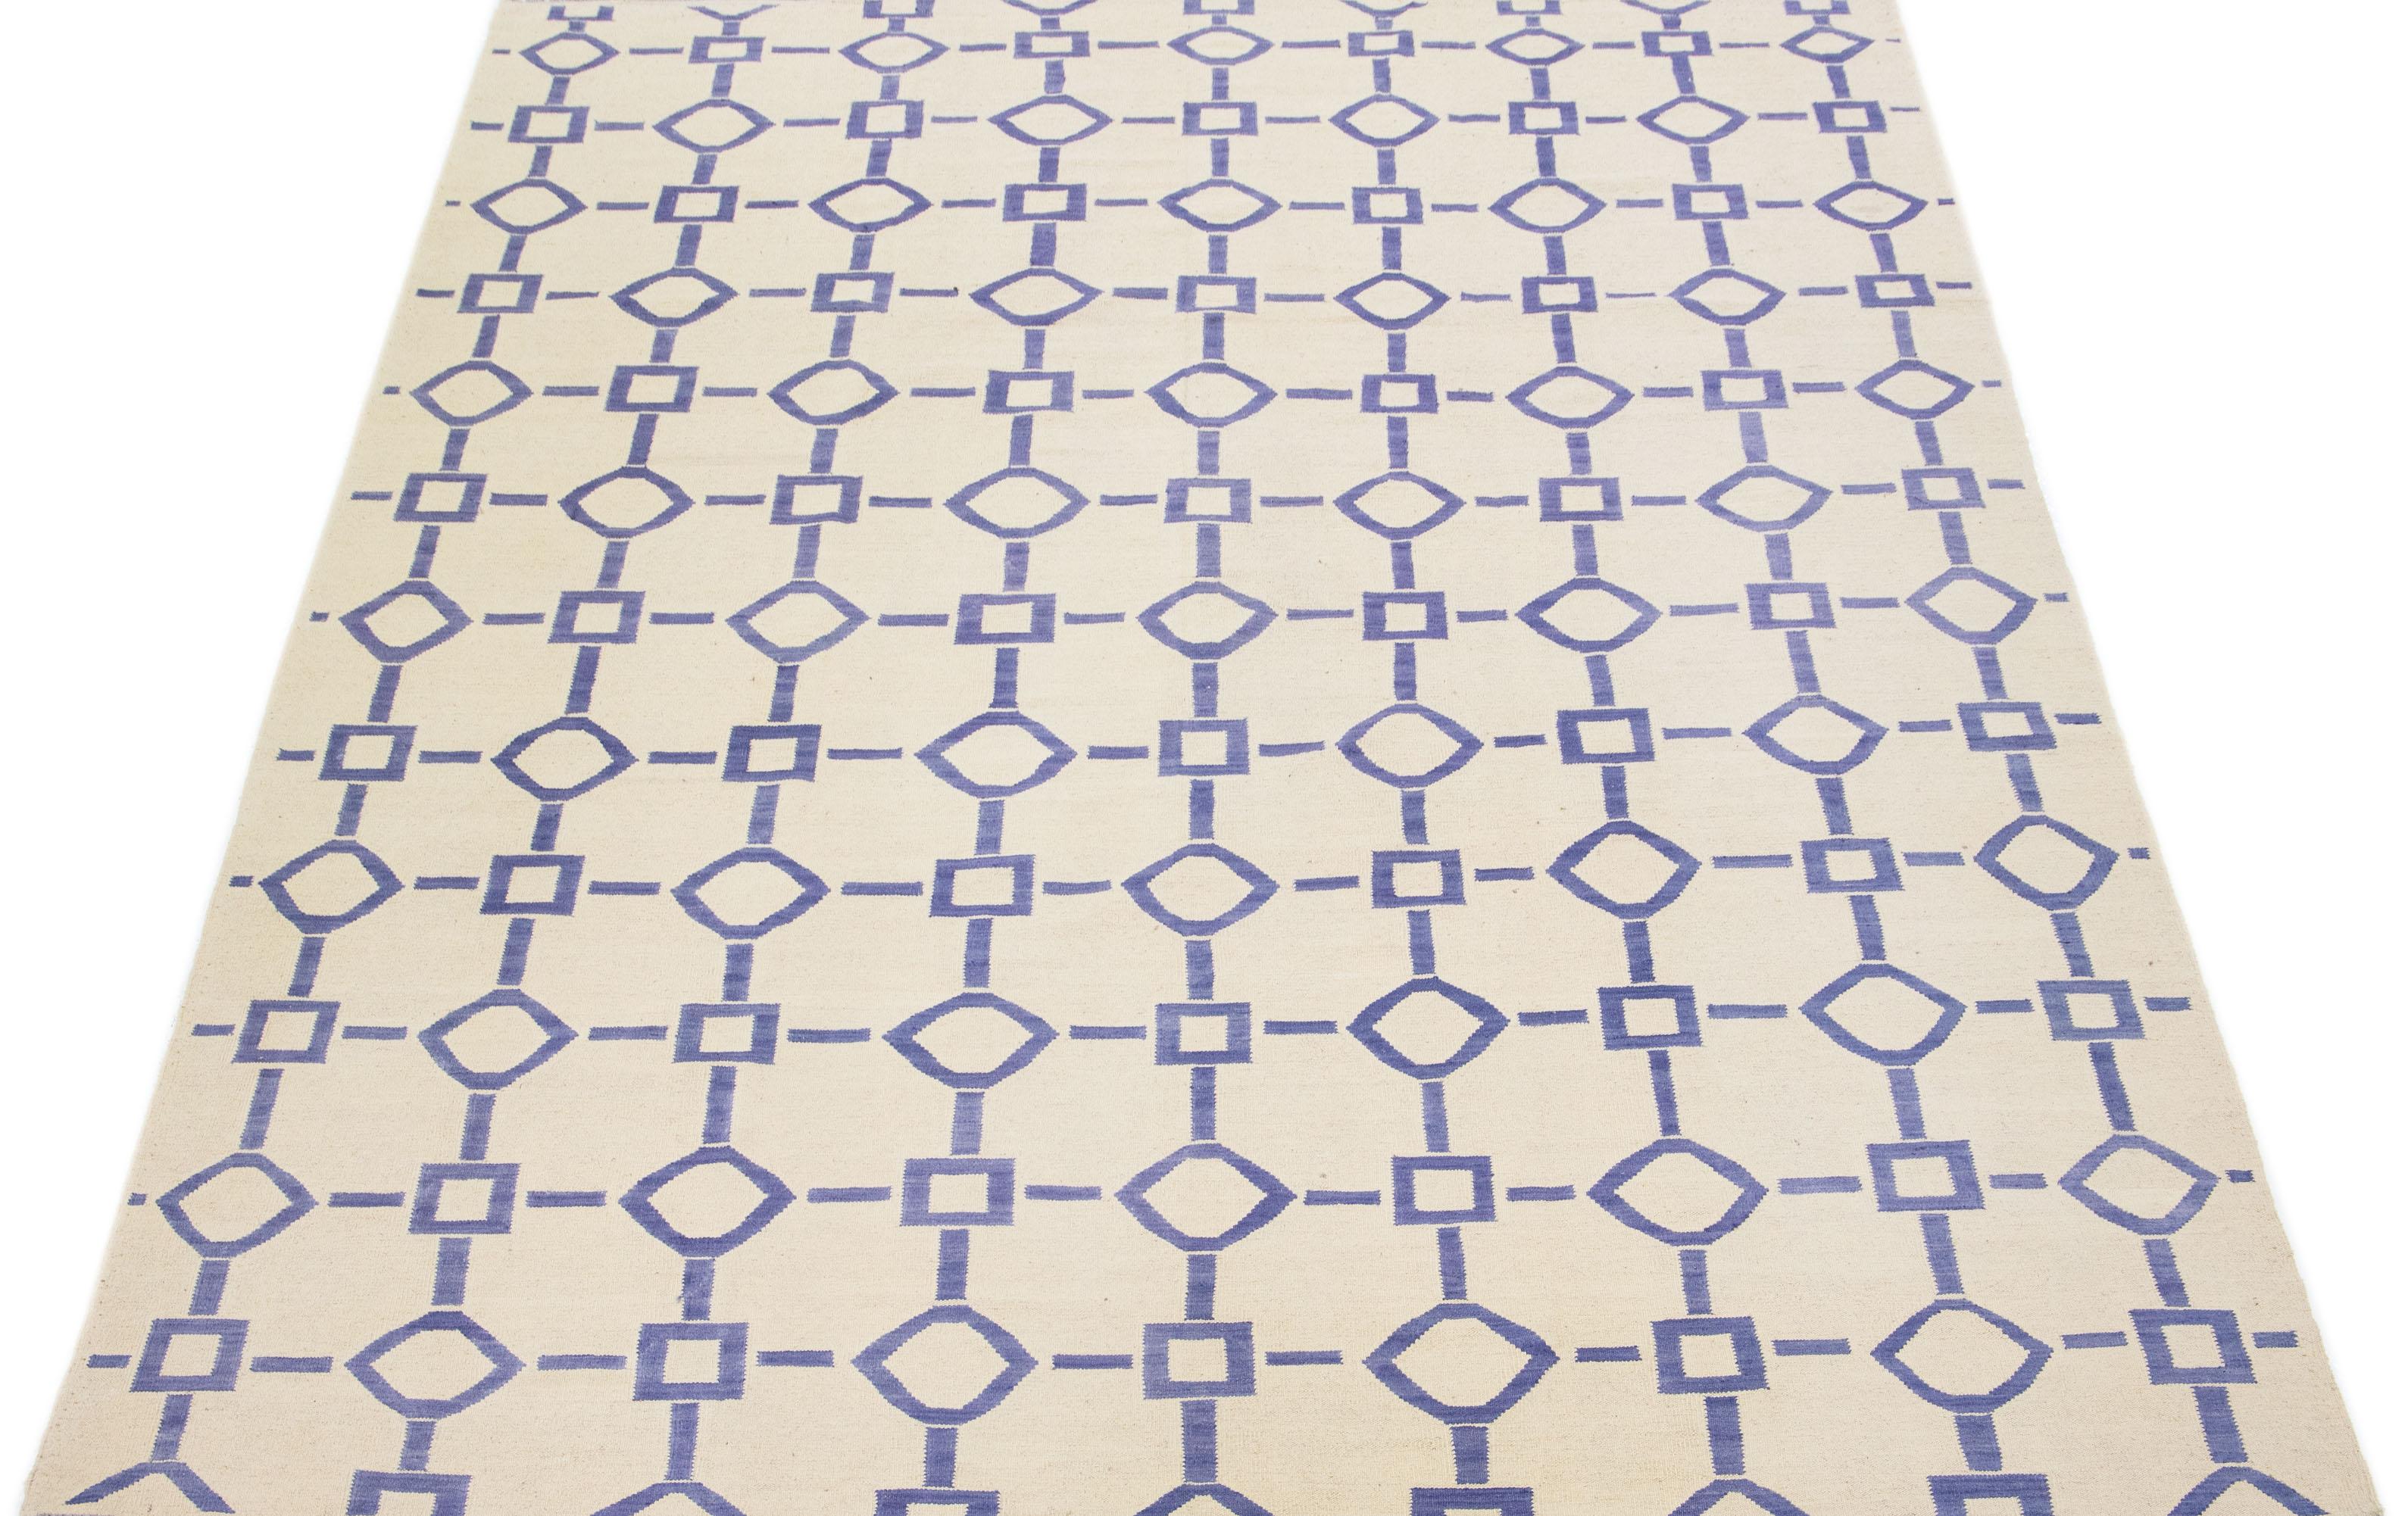 Ce tapis moderne Rug & Kilim respire l'élégance avec sa laine finement tissée à plat, présentée dans une captivante teinte ivoire complétée par un étonnant motif géométrique aux accents bleus.

Ce tapis mesure 9' x 12'2